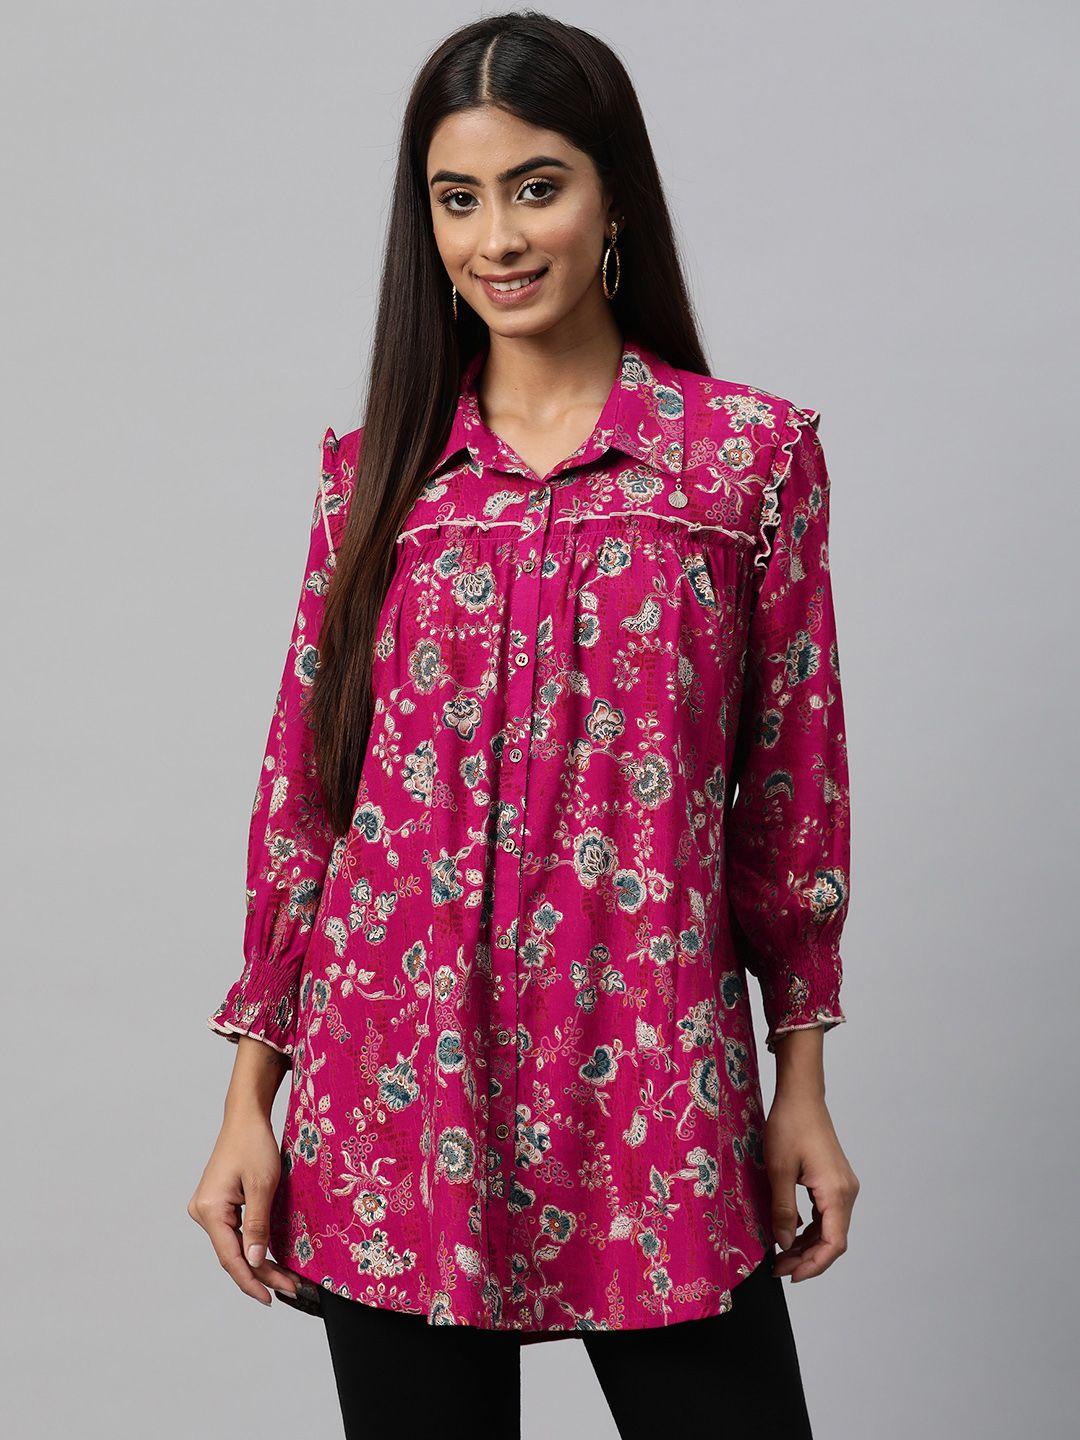 nayam-by-lakshita-smart-floral-printed-puff-sleeves-ruffled-longline-casual-shirt